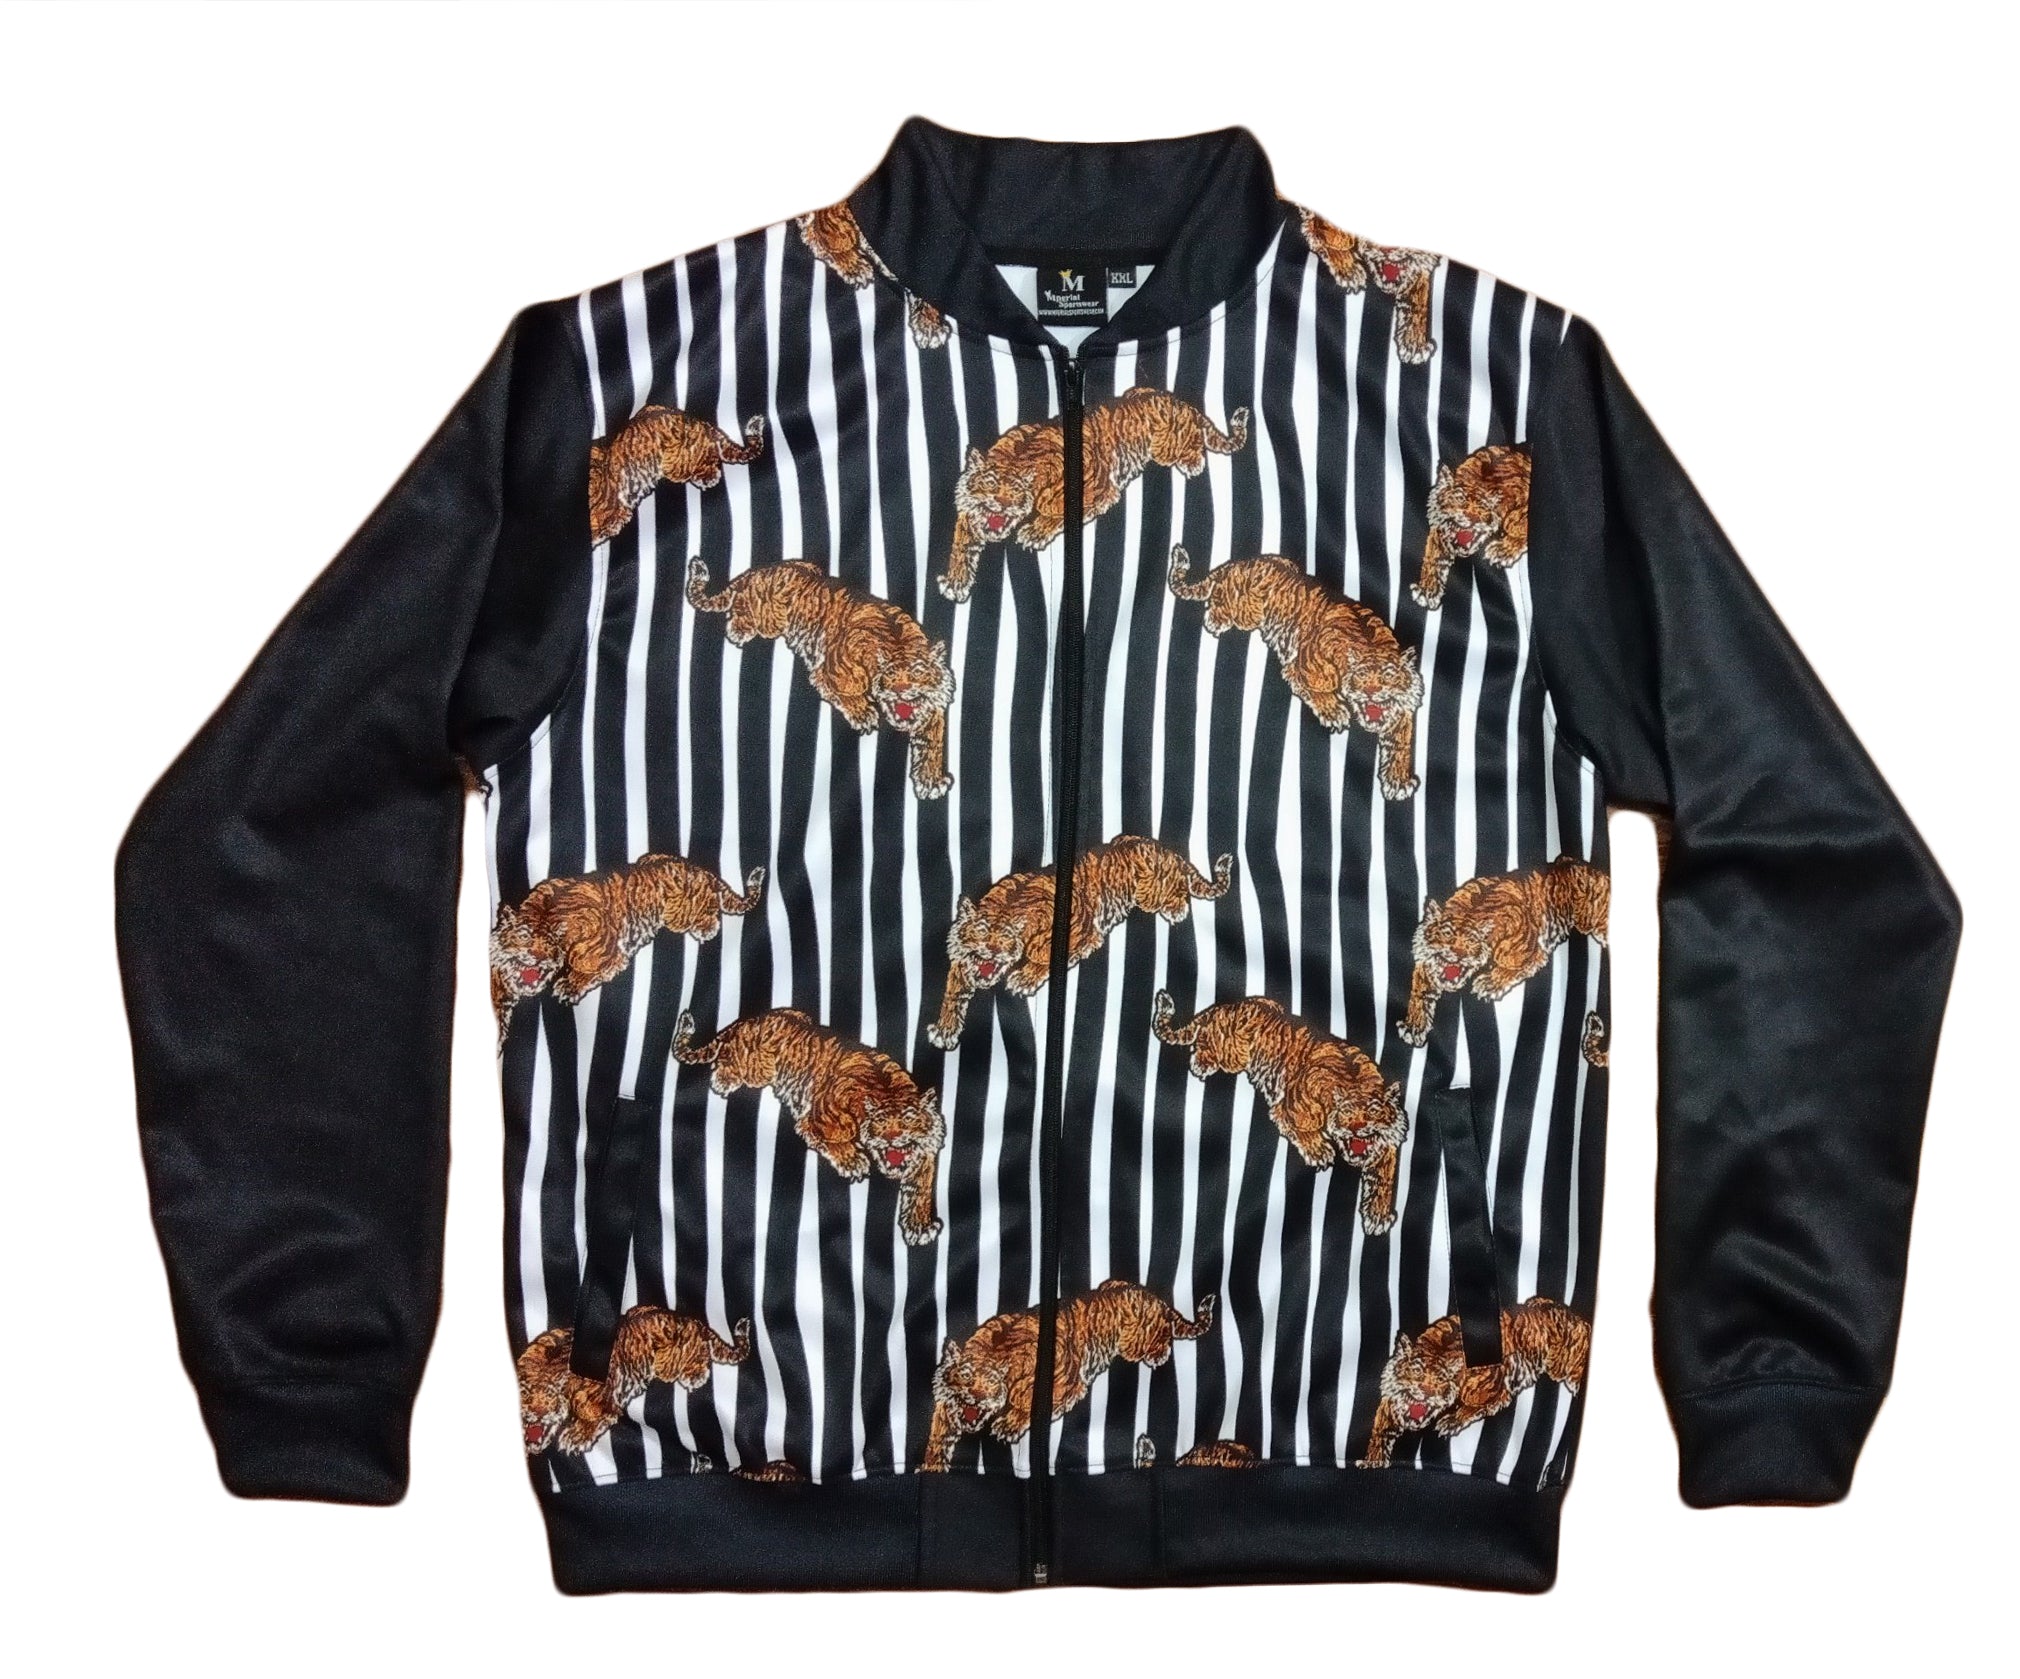 Mperial Zebra Jacket